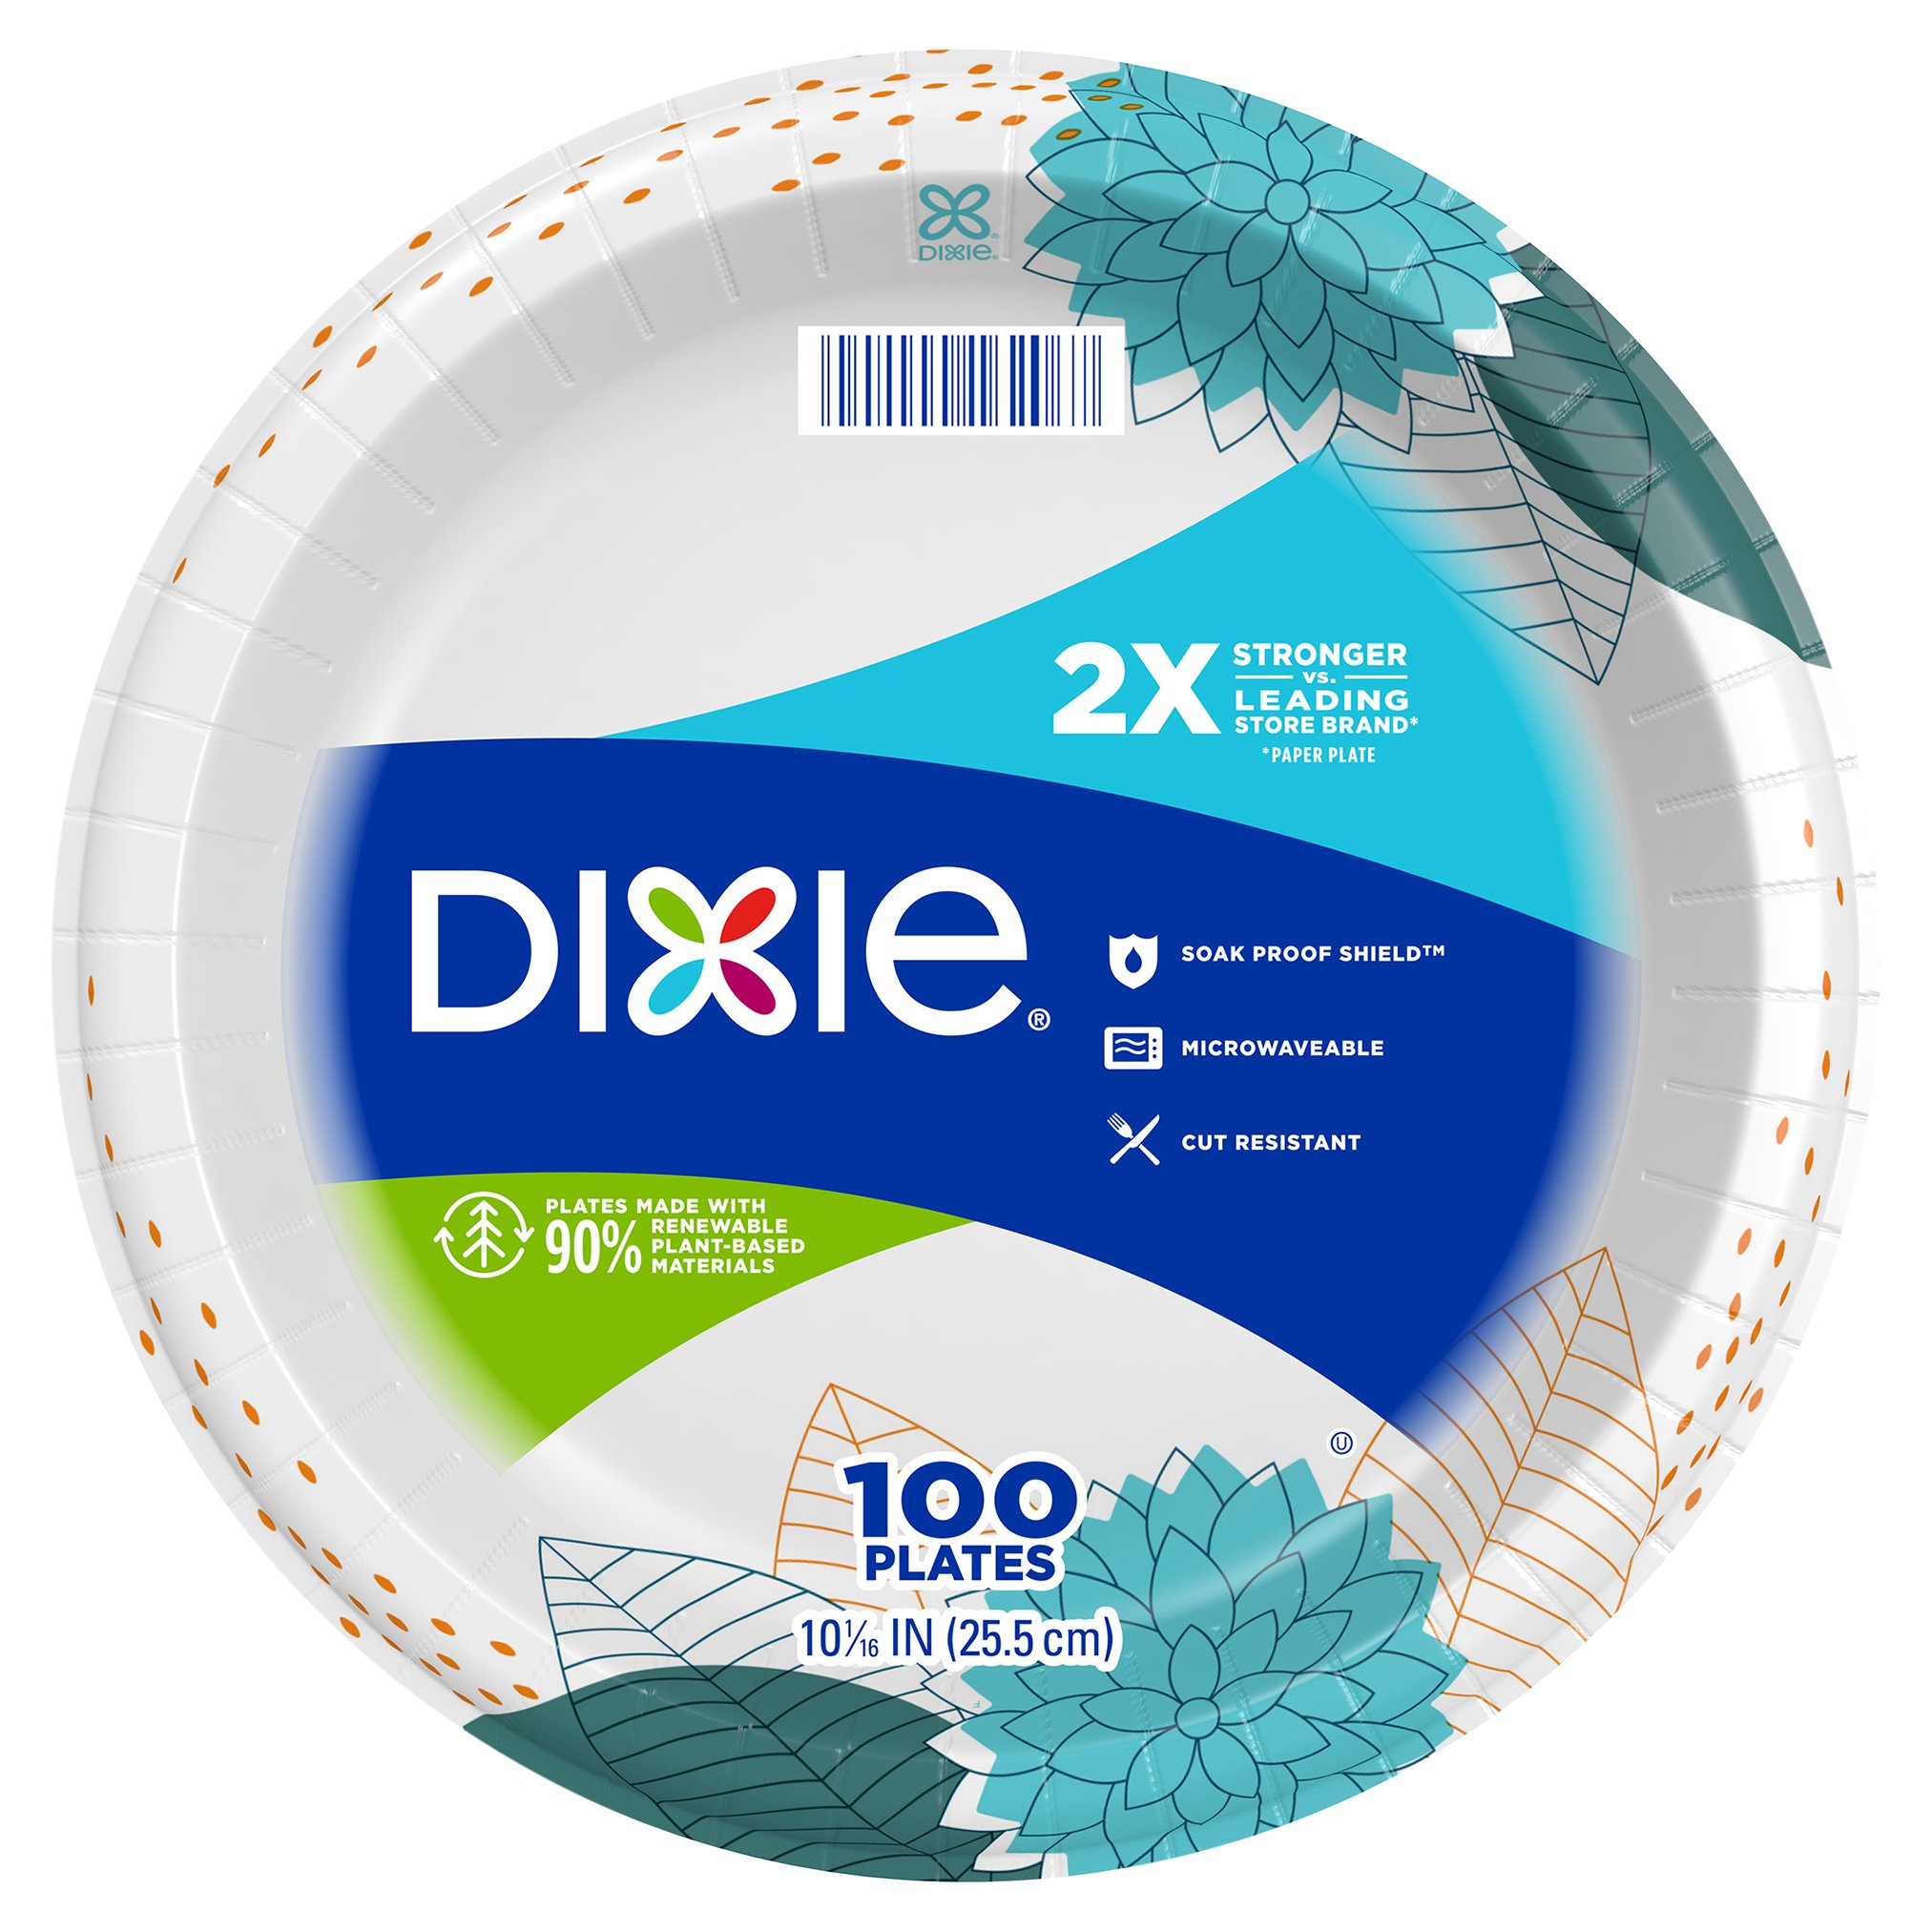 Dixie Paper Plates 